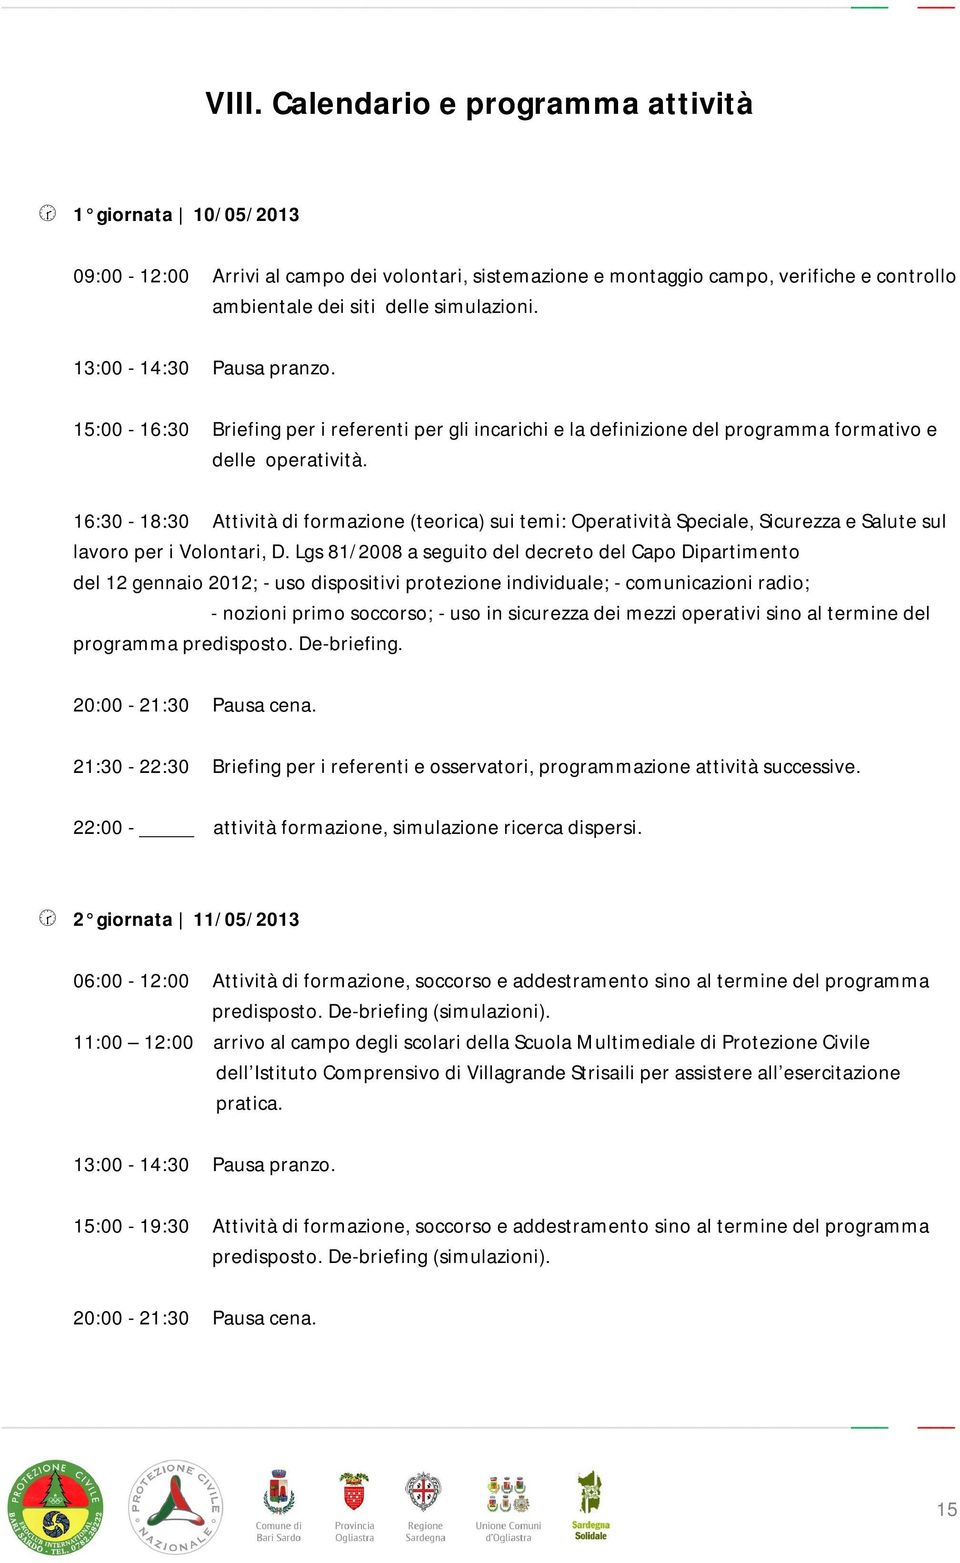 16:30-18:30 Attività di formazione (teorica) sui temi: Operatività Speciale, Sicurezza e Salute sul lavoro per i Volontari, D.